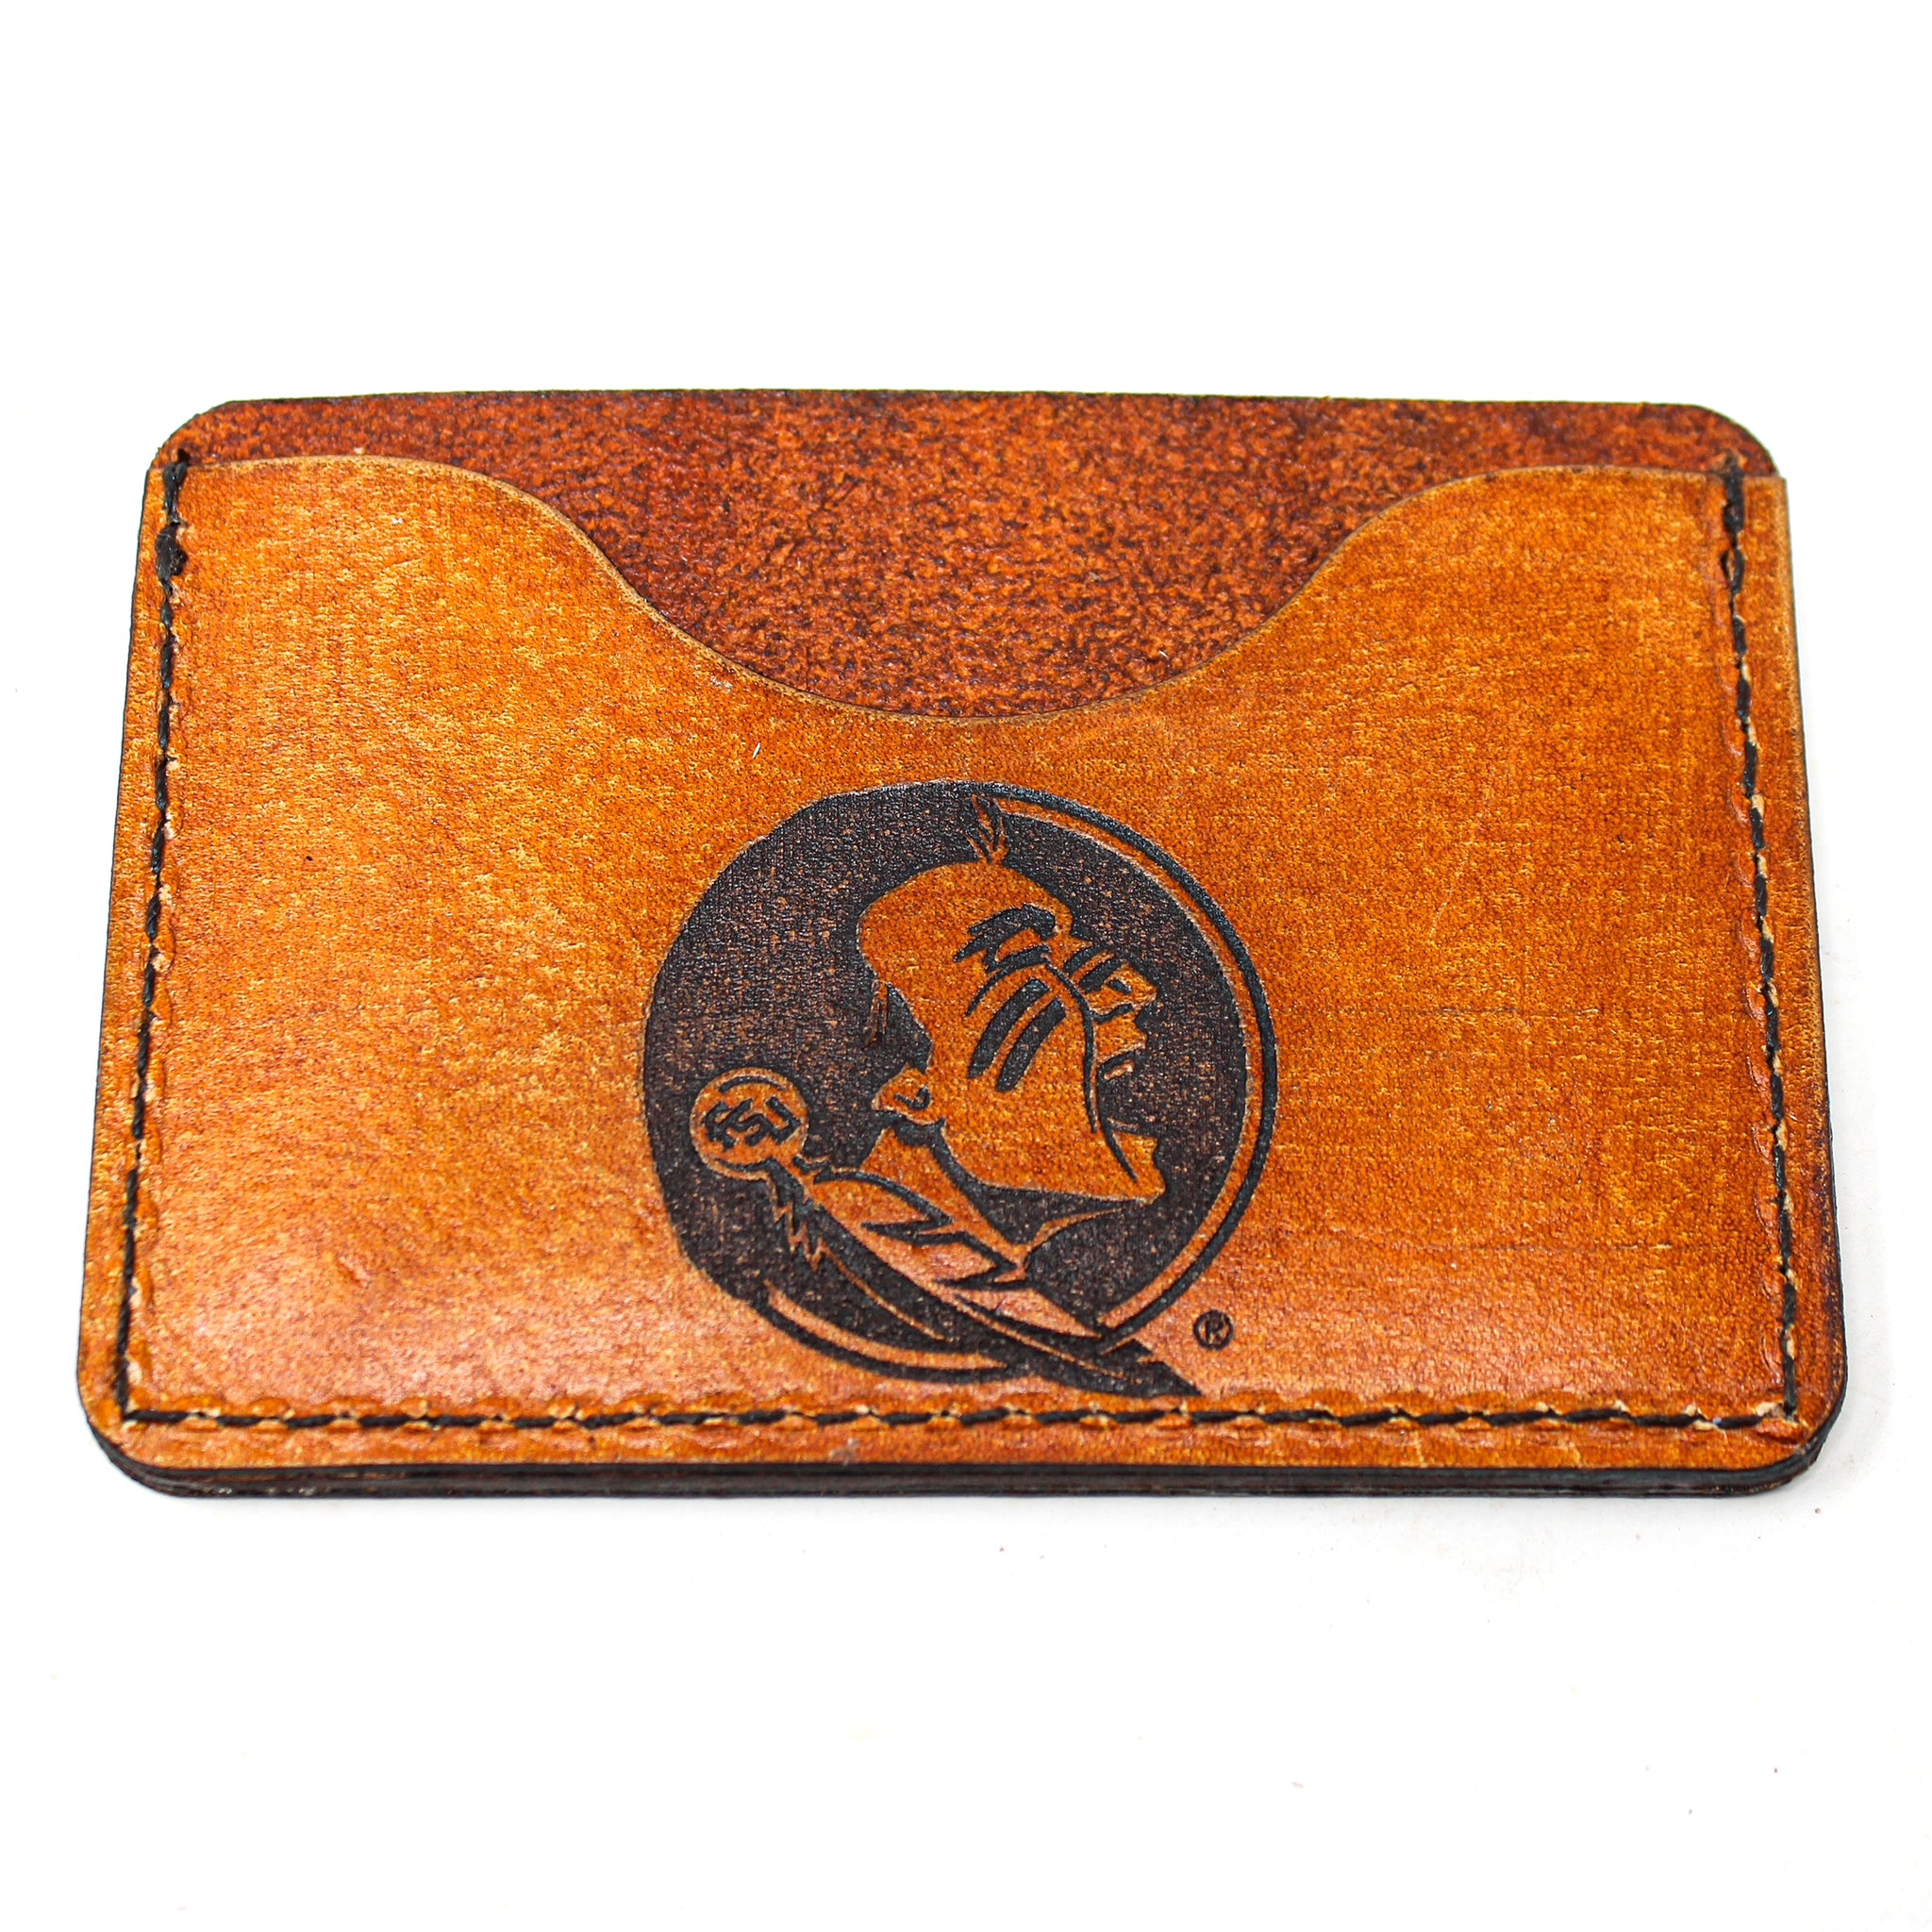 Leather Card Holder Wallet -  FSU Spirited